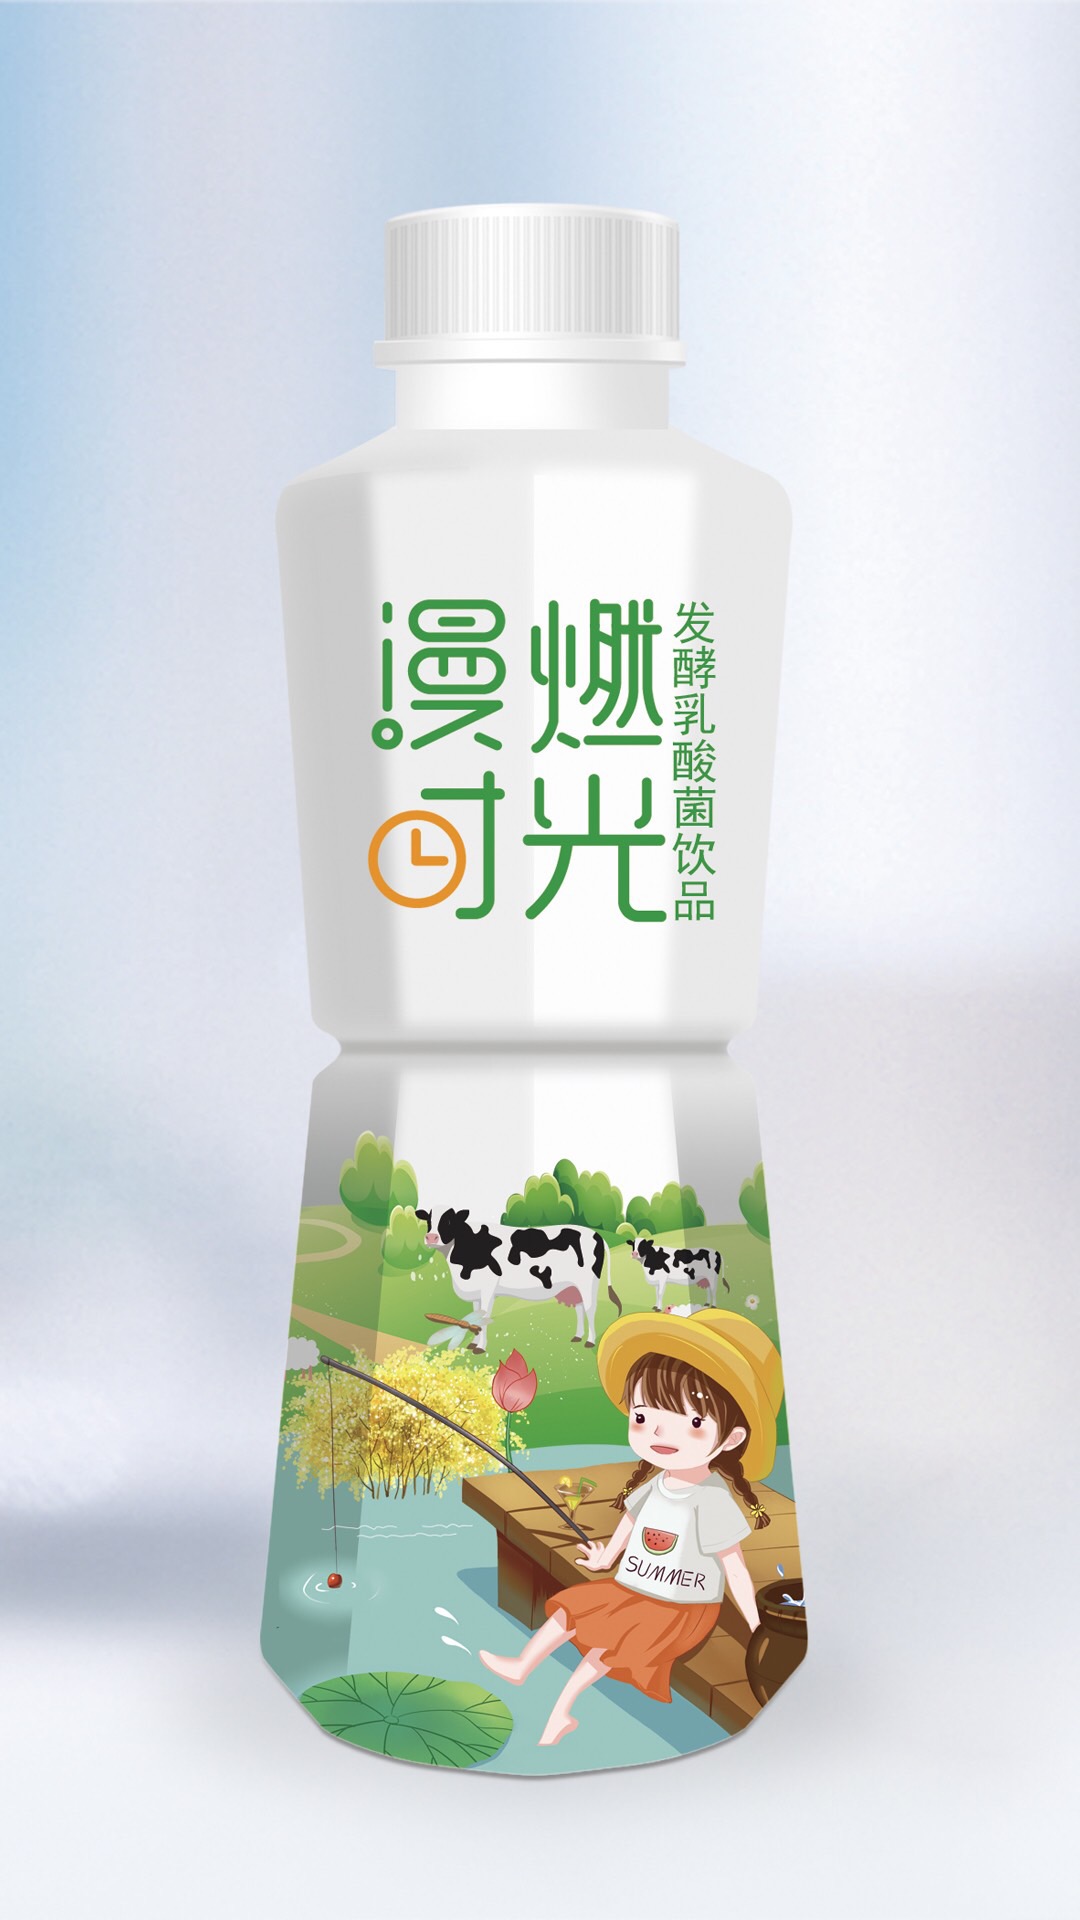 北京酸奶包装设计